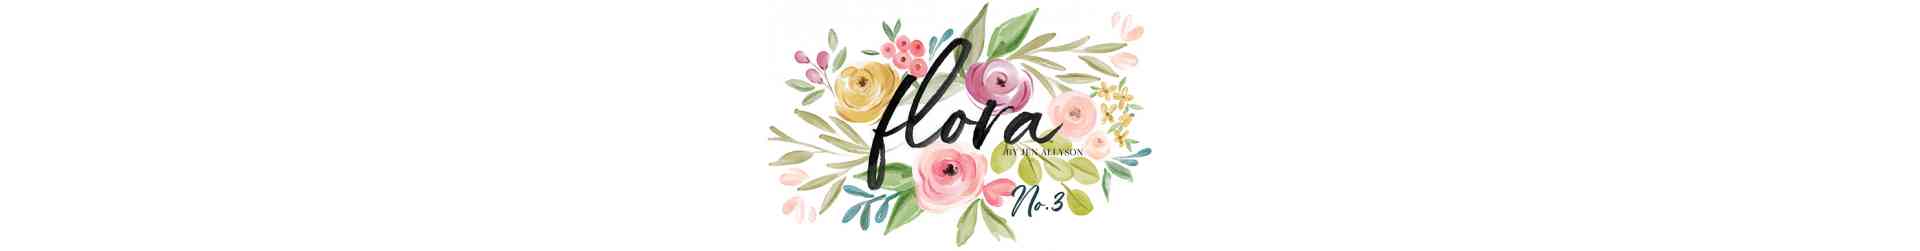 Flora N.3